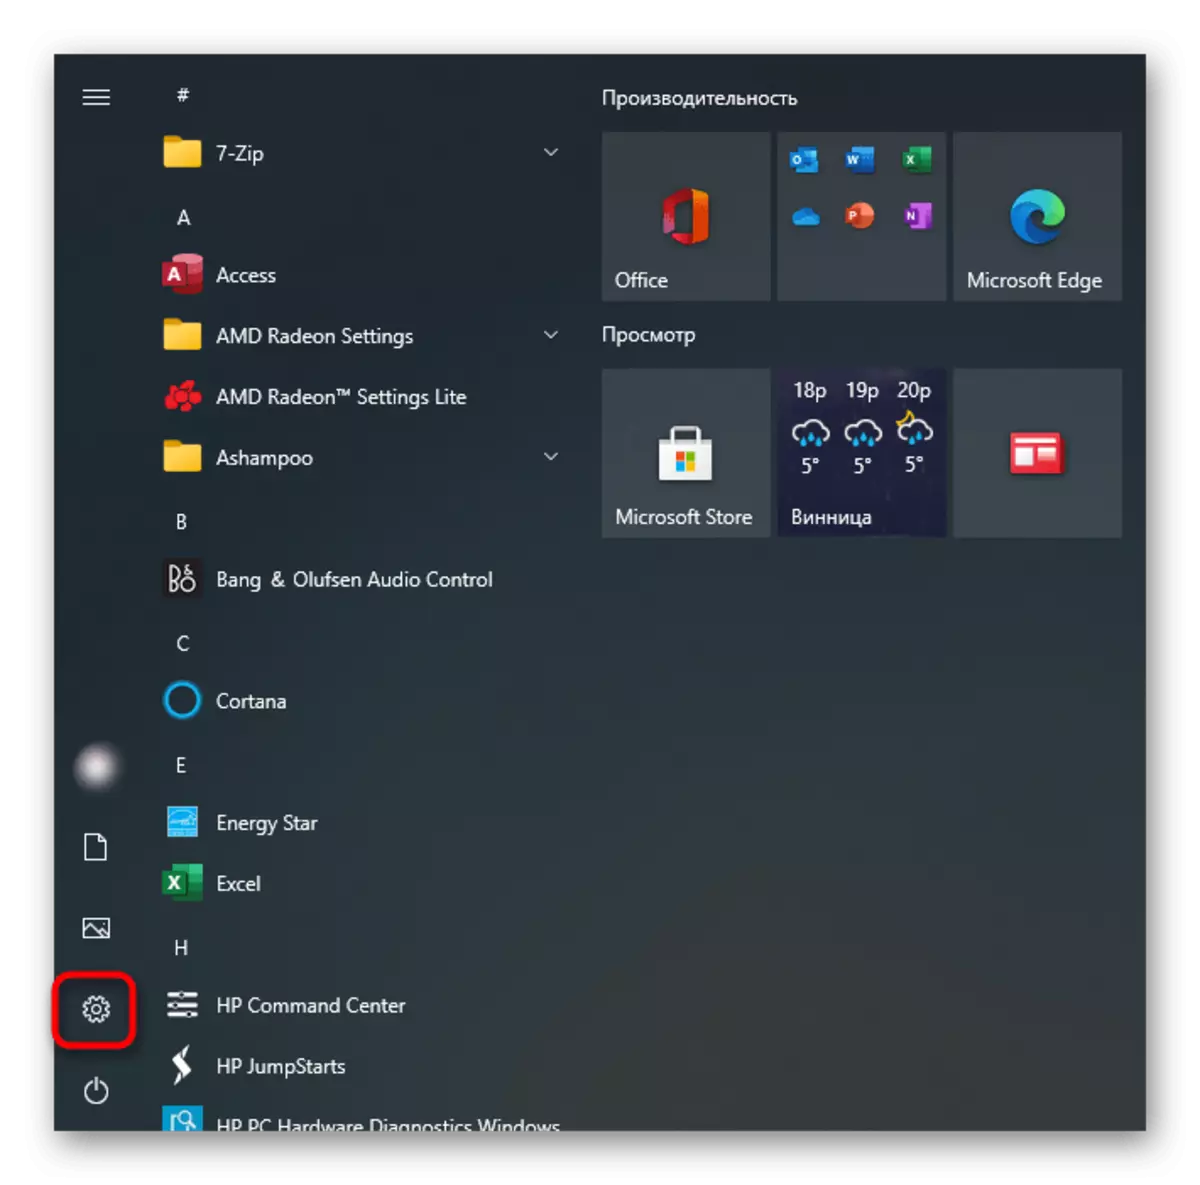 Μεταβείτε στις παραμέτρους για να ενεργοποιήσετε το touchpad στο Laptop Acer με τα Windows 10